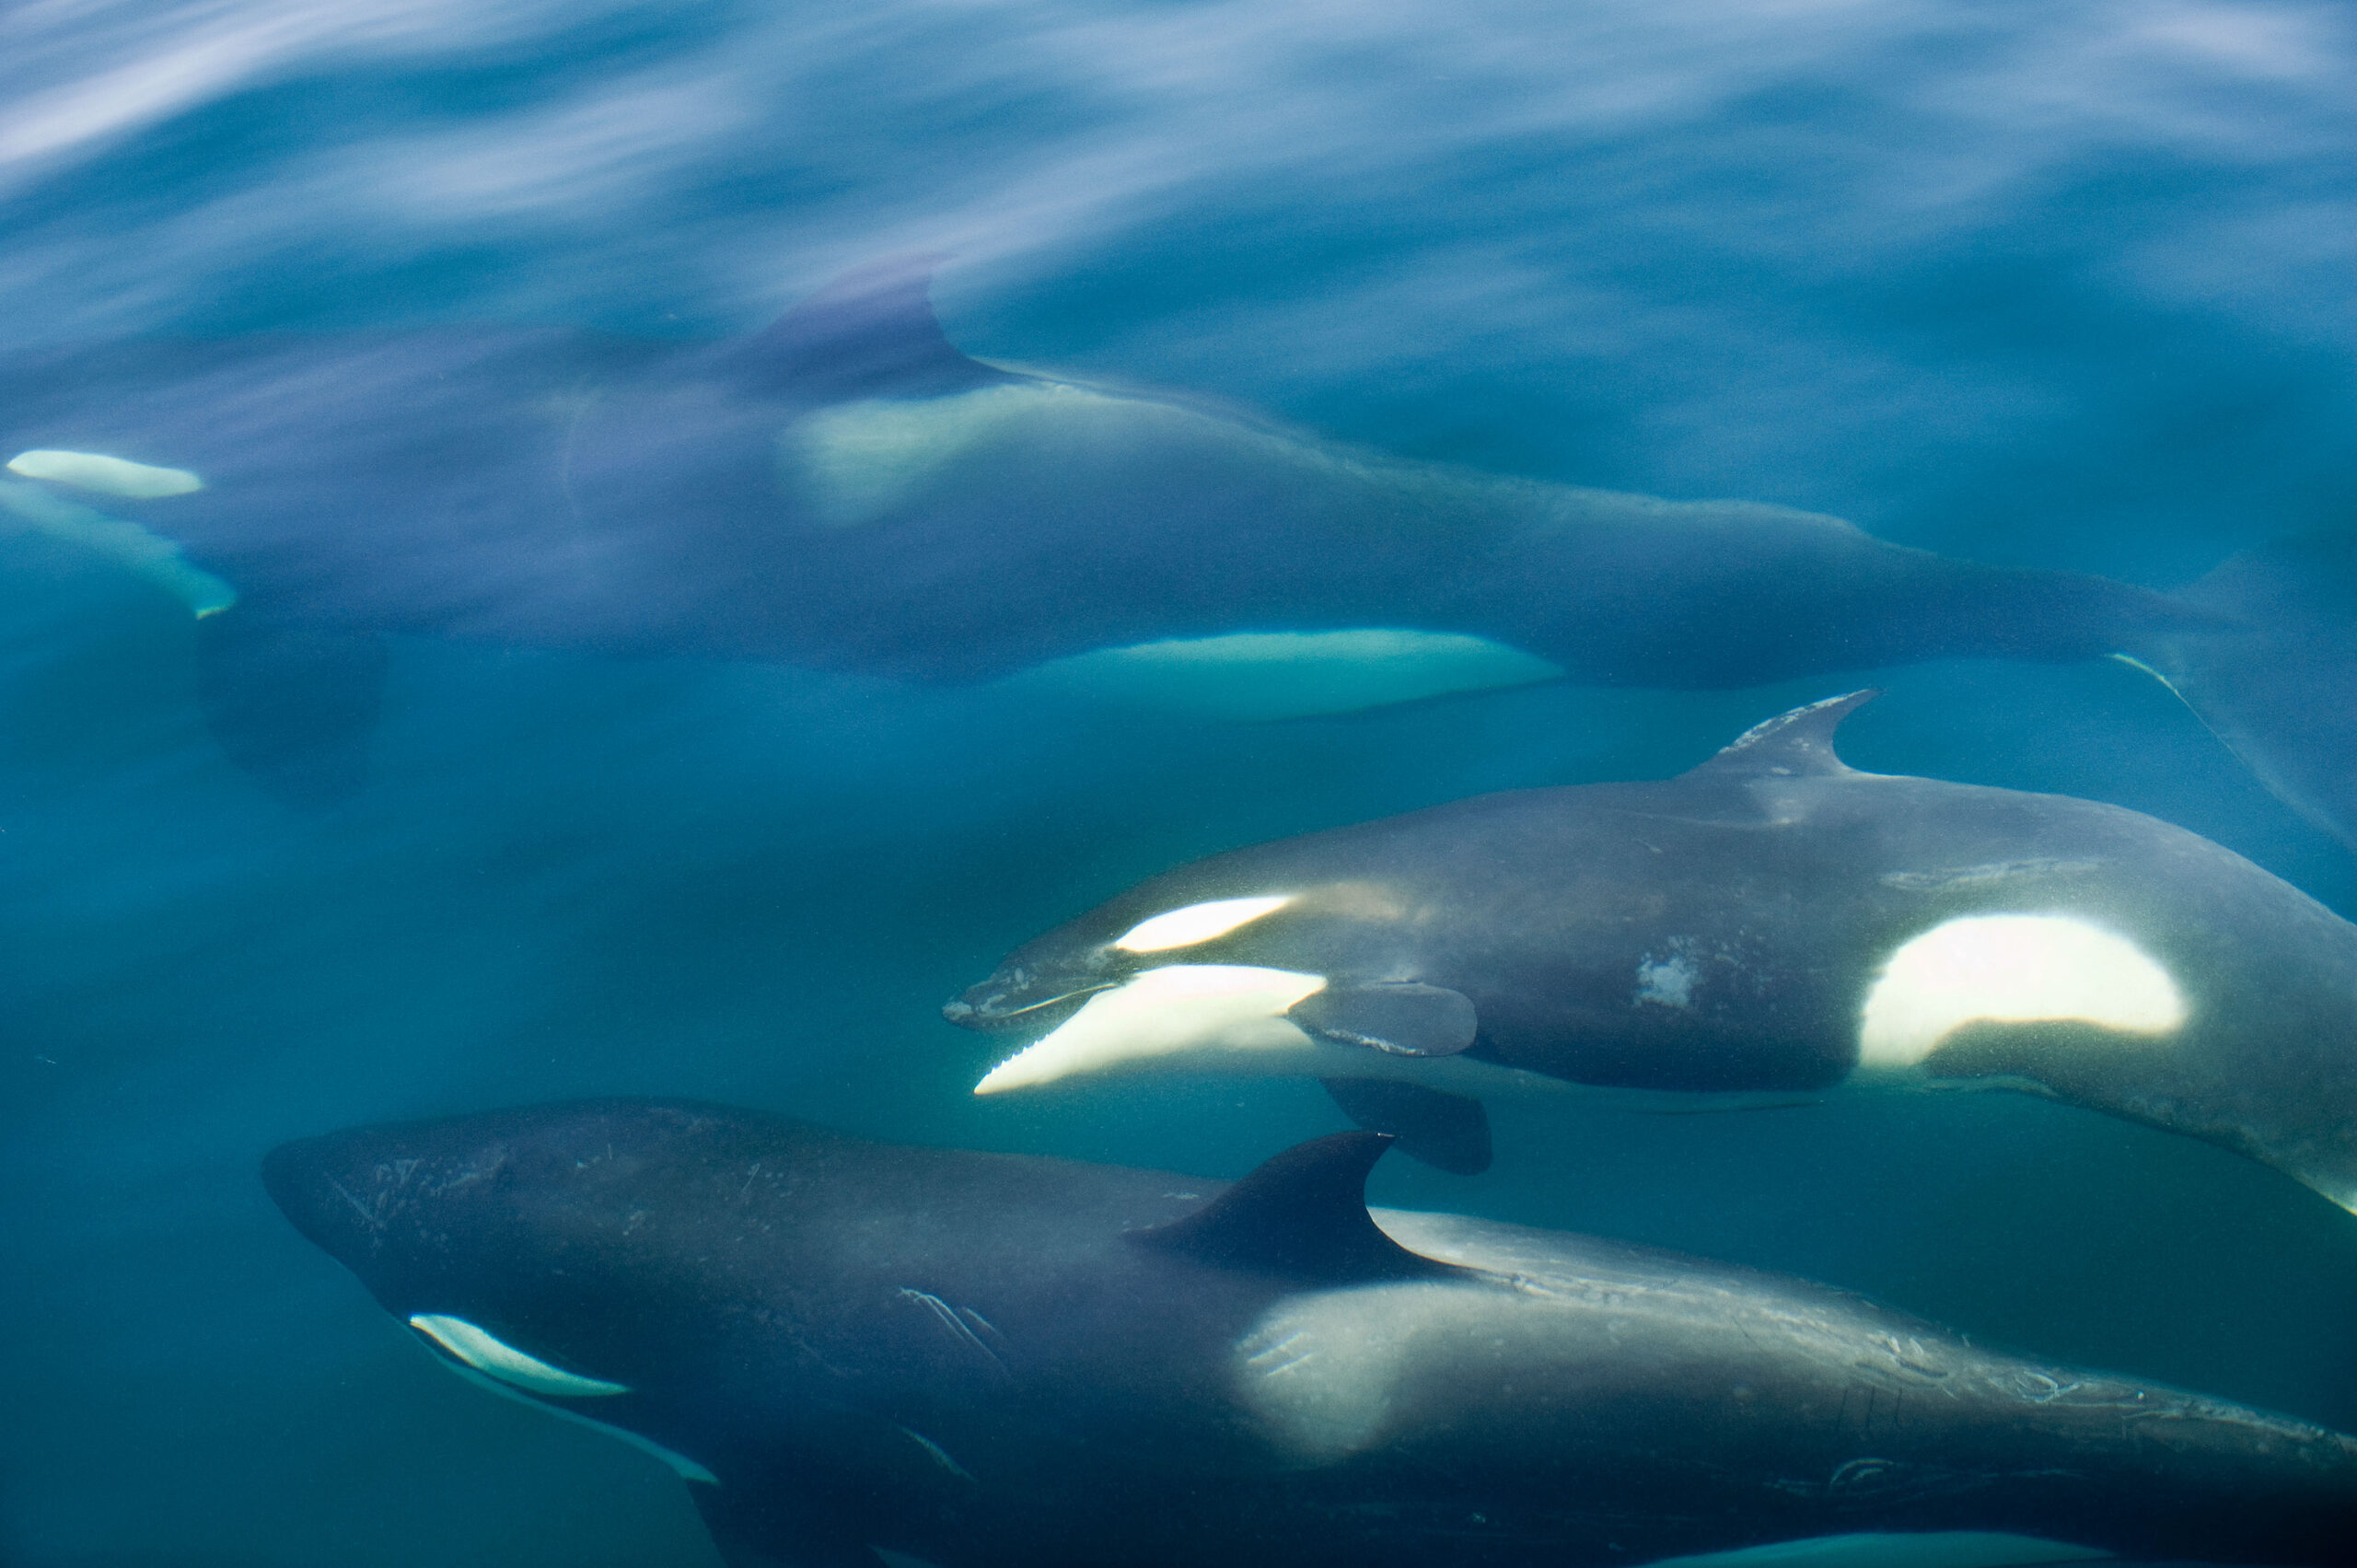 Orcas nah an der Wasseroberfläche © Christopher Swann